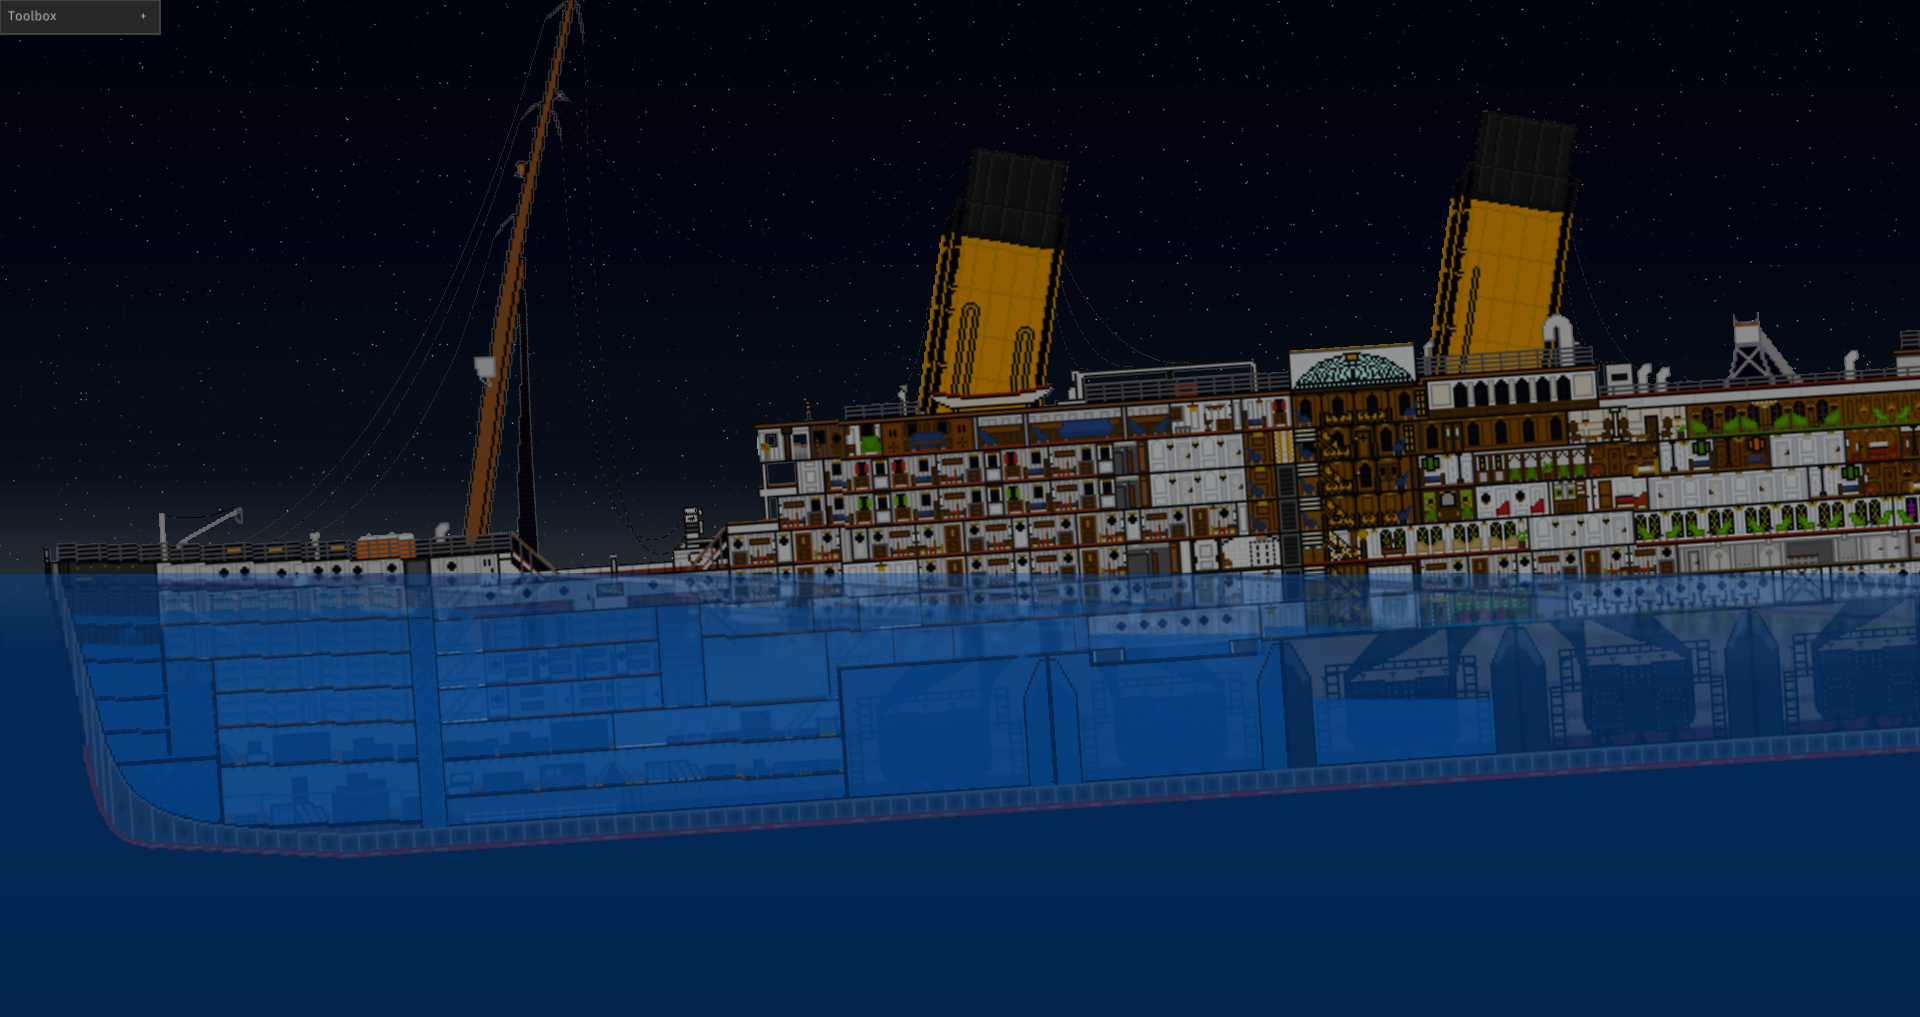 sinking simulator 2 ship packs